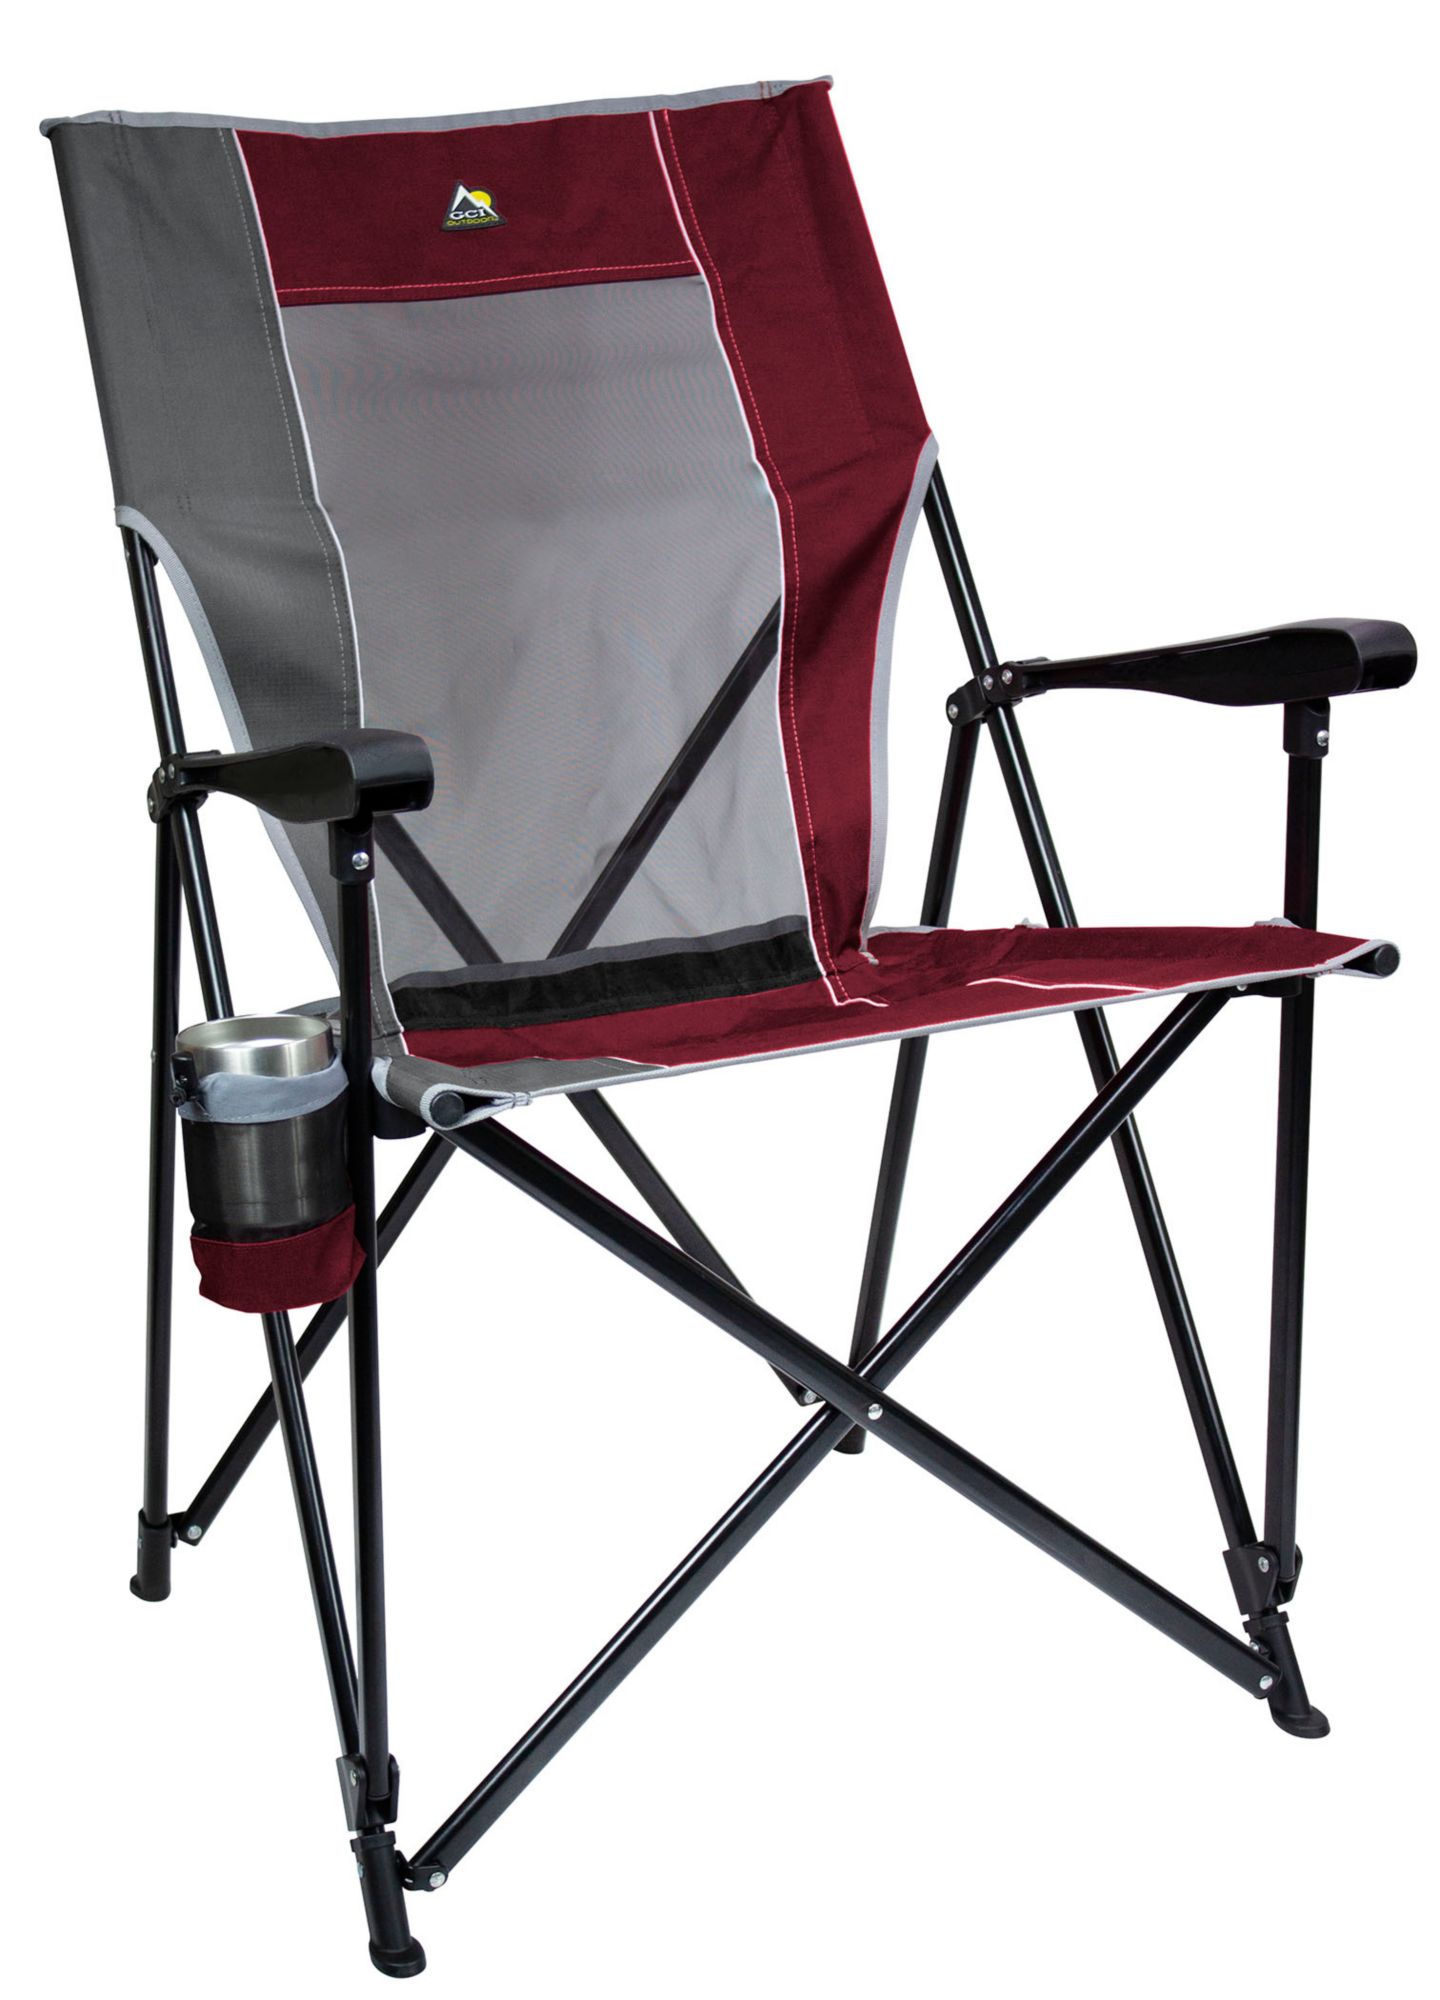 GCI Outdoor Eazy Chair XL | Field \u0026 Stream